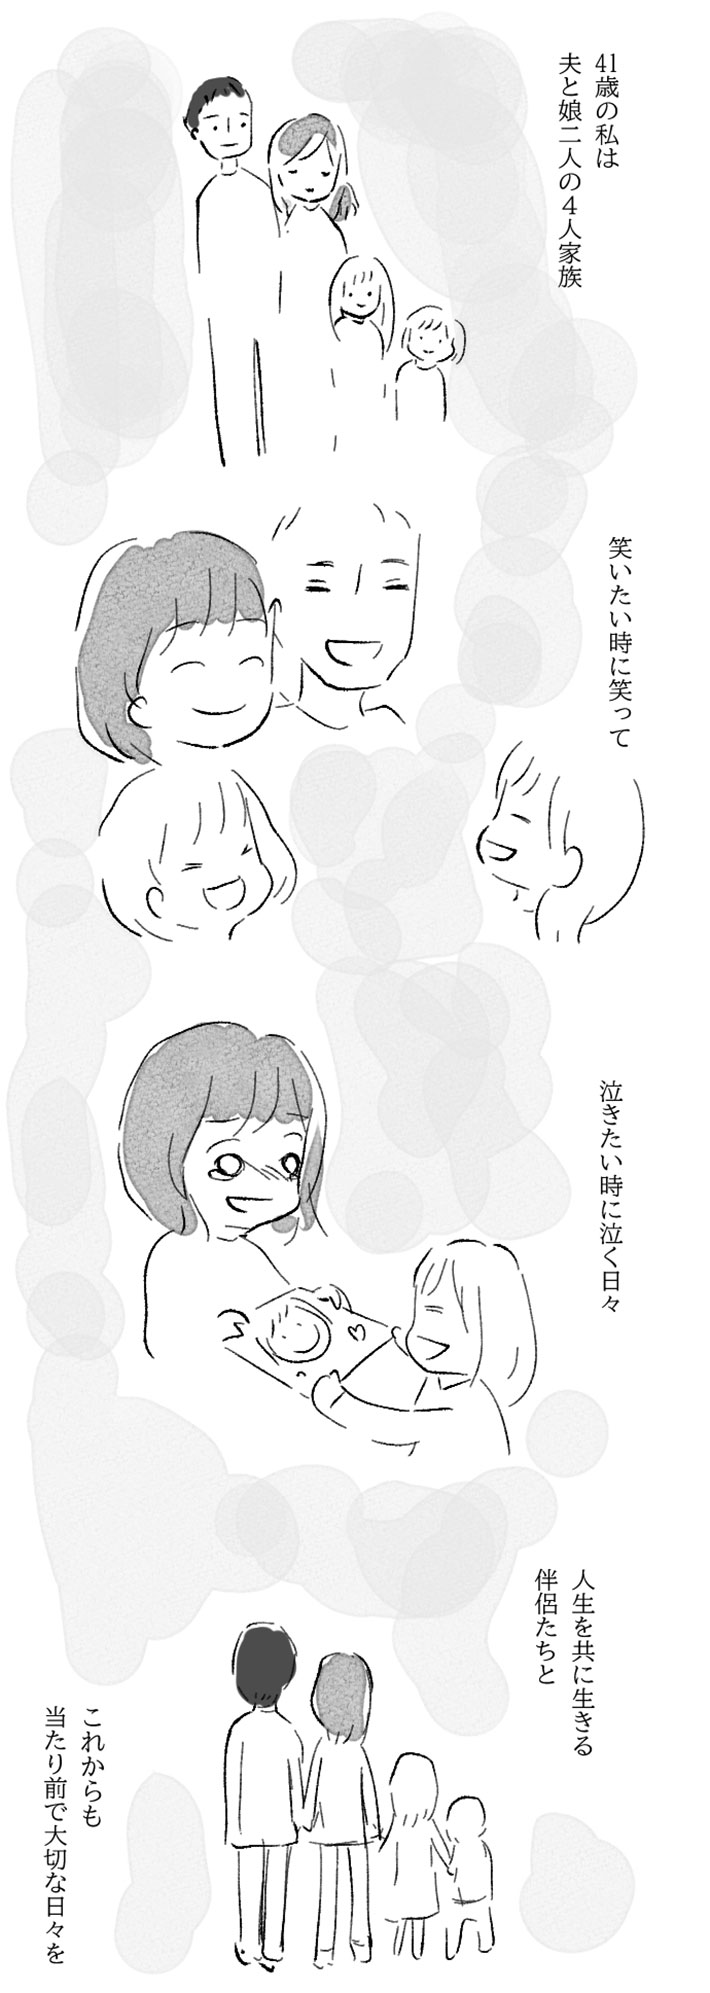 水谷アスさんの漫画作品11